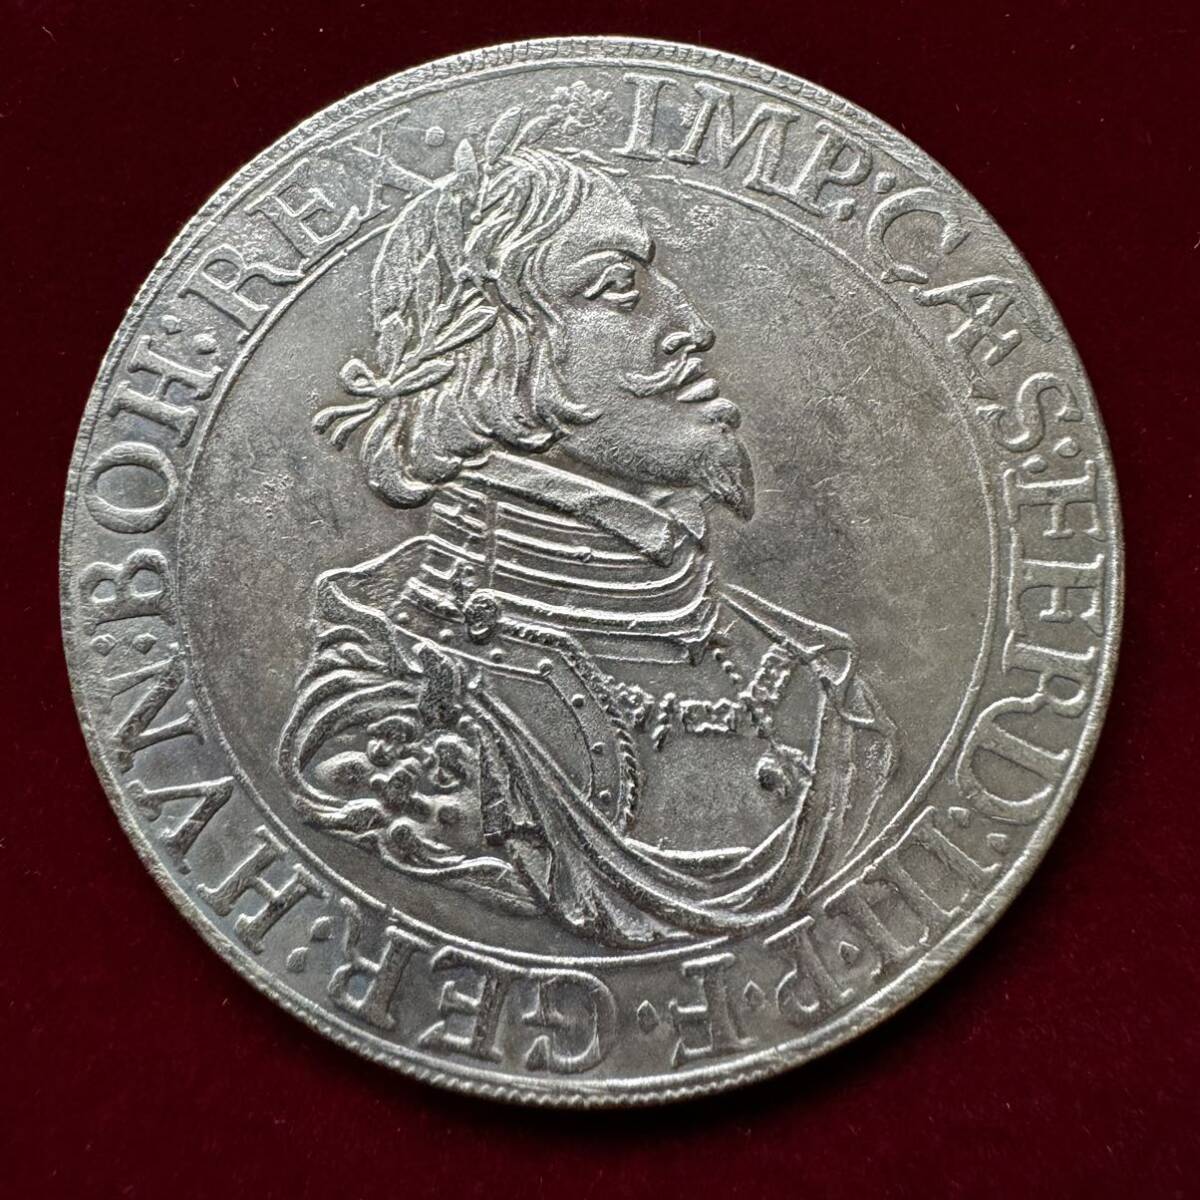 ドイツ 硬貨 古銭 アウグスブルク 1643年 フェルディナンド三世 自由都市 松ぼっくり バロック様式 天使 コイン 銀貨 外国古銭 海外硬貨の画像2